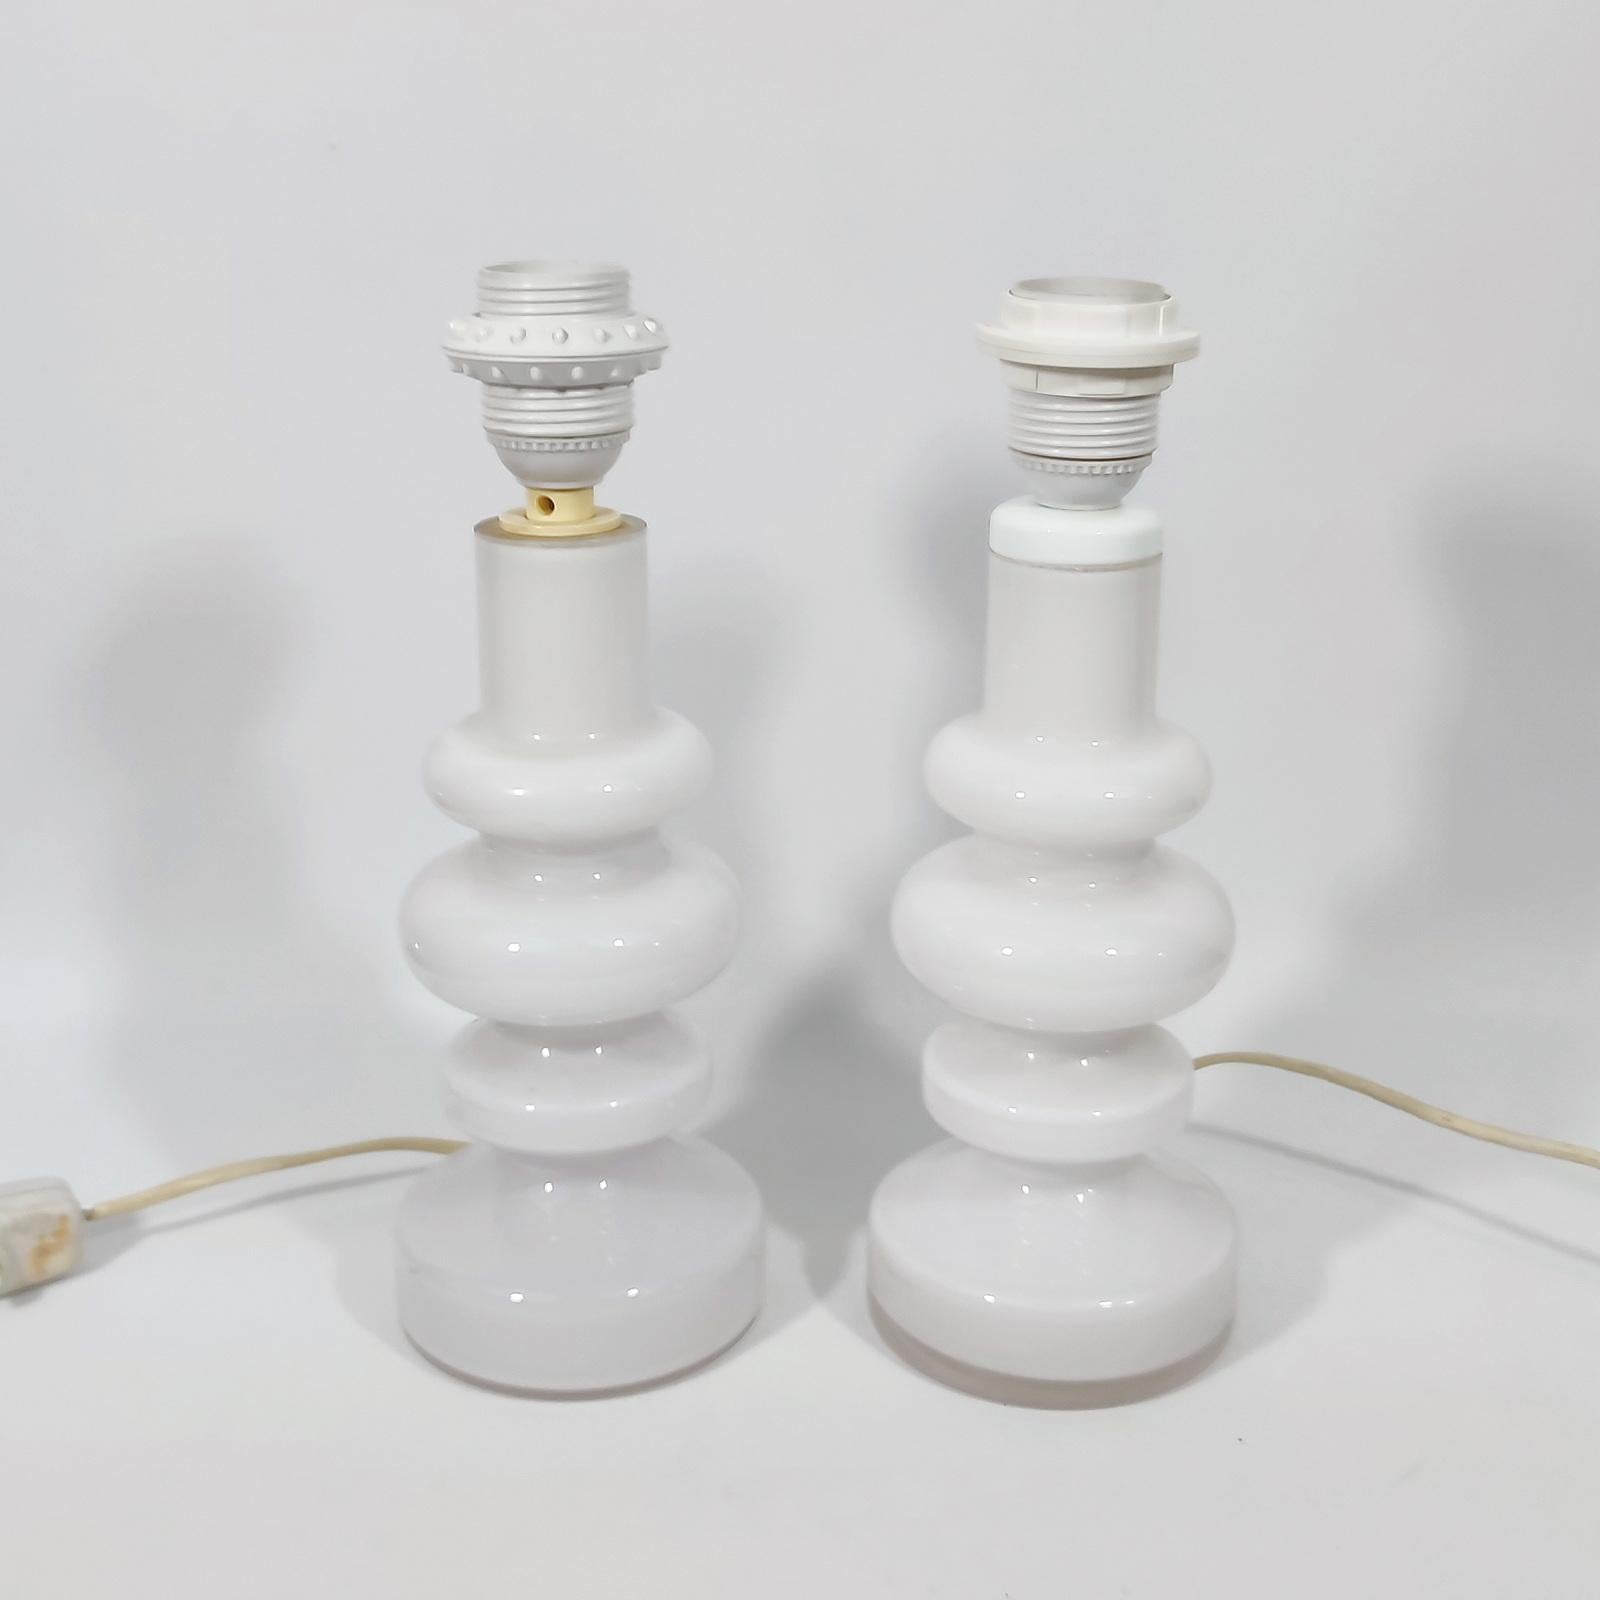 Une trouvaille rare ! Deux lampes de table en verre blanc laiteux conçues par Gunnar Ander pour Lindshammar, Suède, fin des années 1960.
En état original. Pas d'ébréchures ni d'autres dommages.
Les abat-jour ne sont pas inclus.
Équipé de 2 douilles